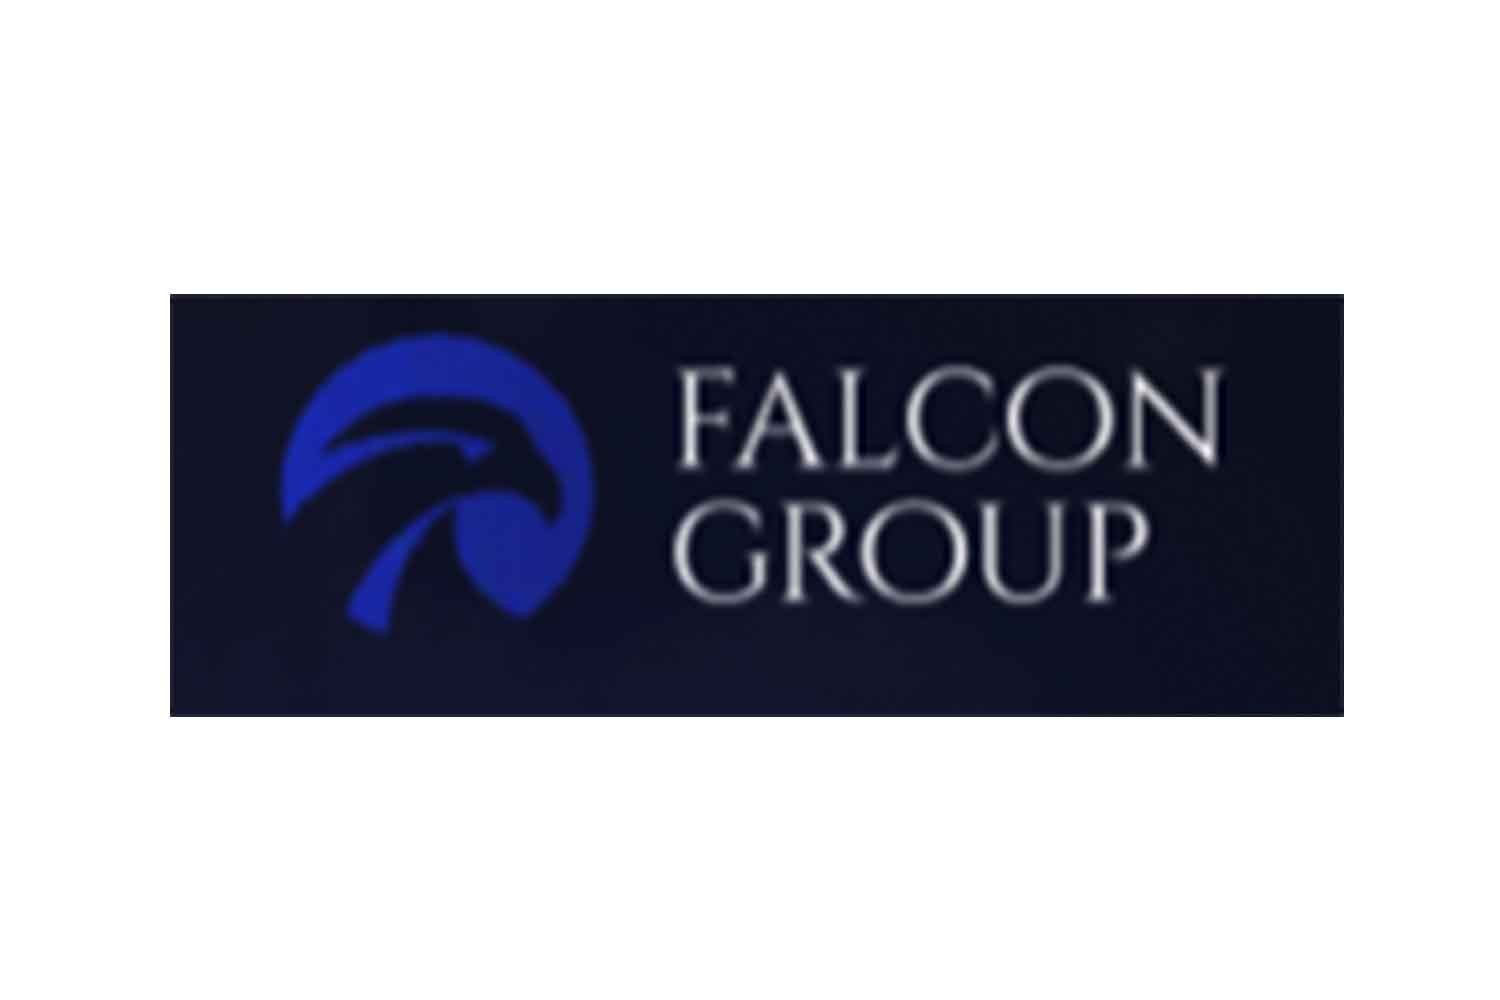 Фалкон груп. Falcon Group. Финансовая группа отзывы